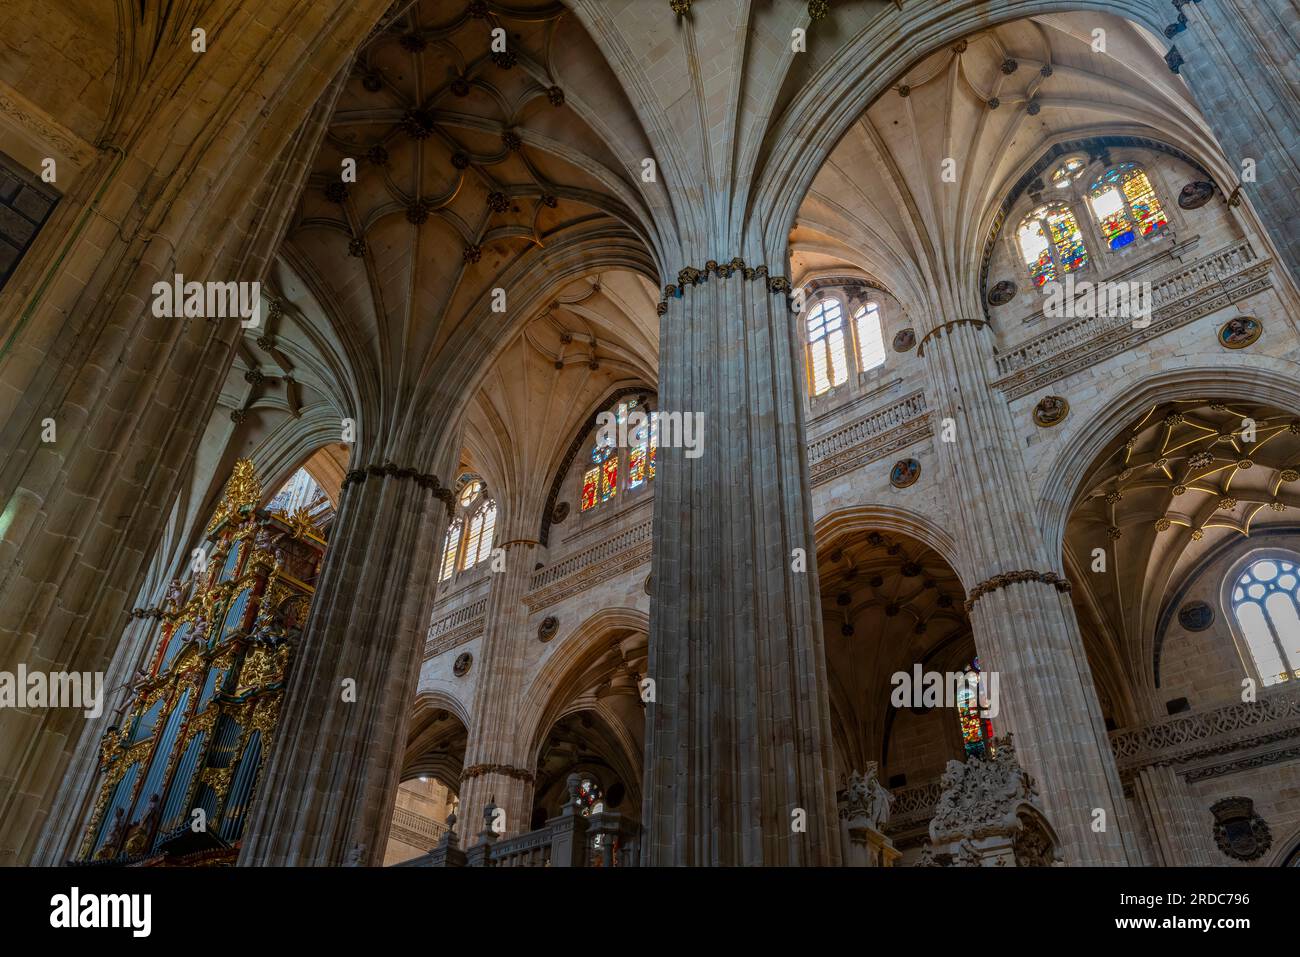 Interno della nuova cattedra, costruita durante il XVI secolo in stile tardo gotico e rinascimentale, chiamata anche stile plateresco. Salamanca, Spagna. Foto Stock